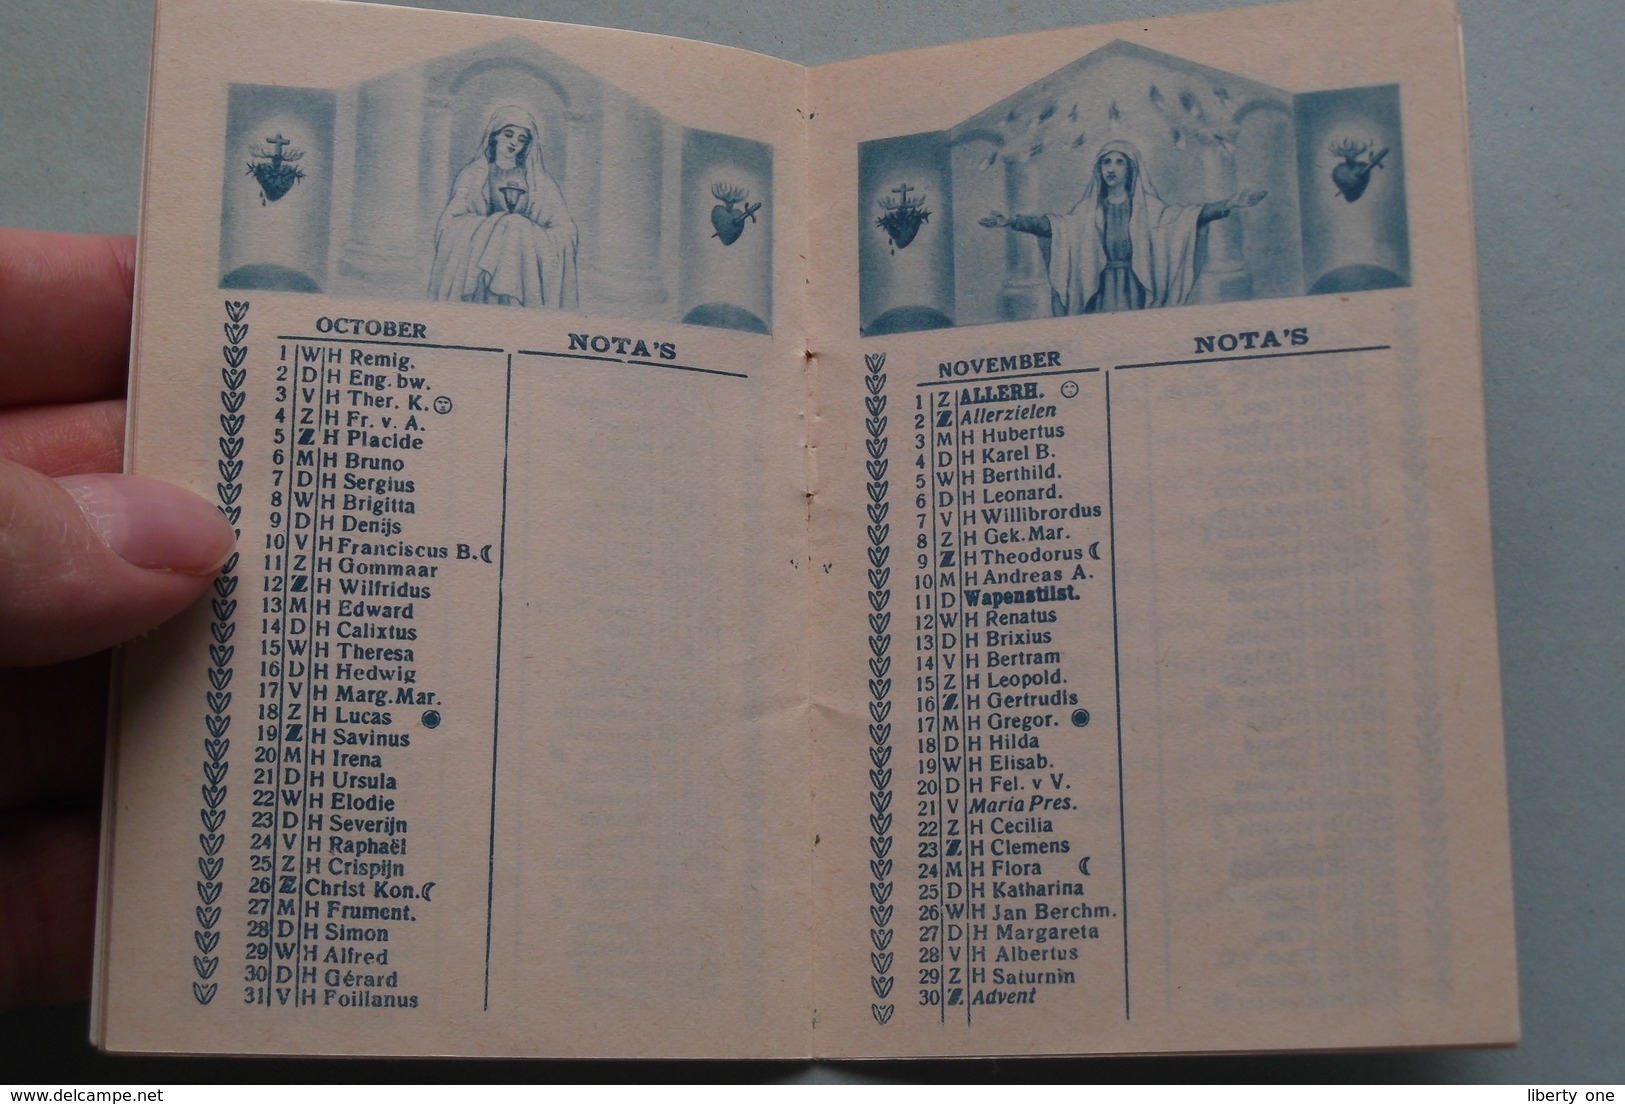 Kalender van het HEILIG HART > Propagandawerk der NATIONALE BASILIEK ( Kalender 1952  > zie foto's ) !